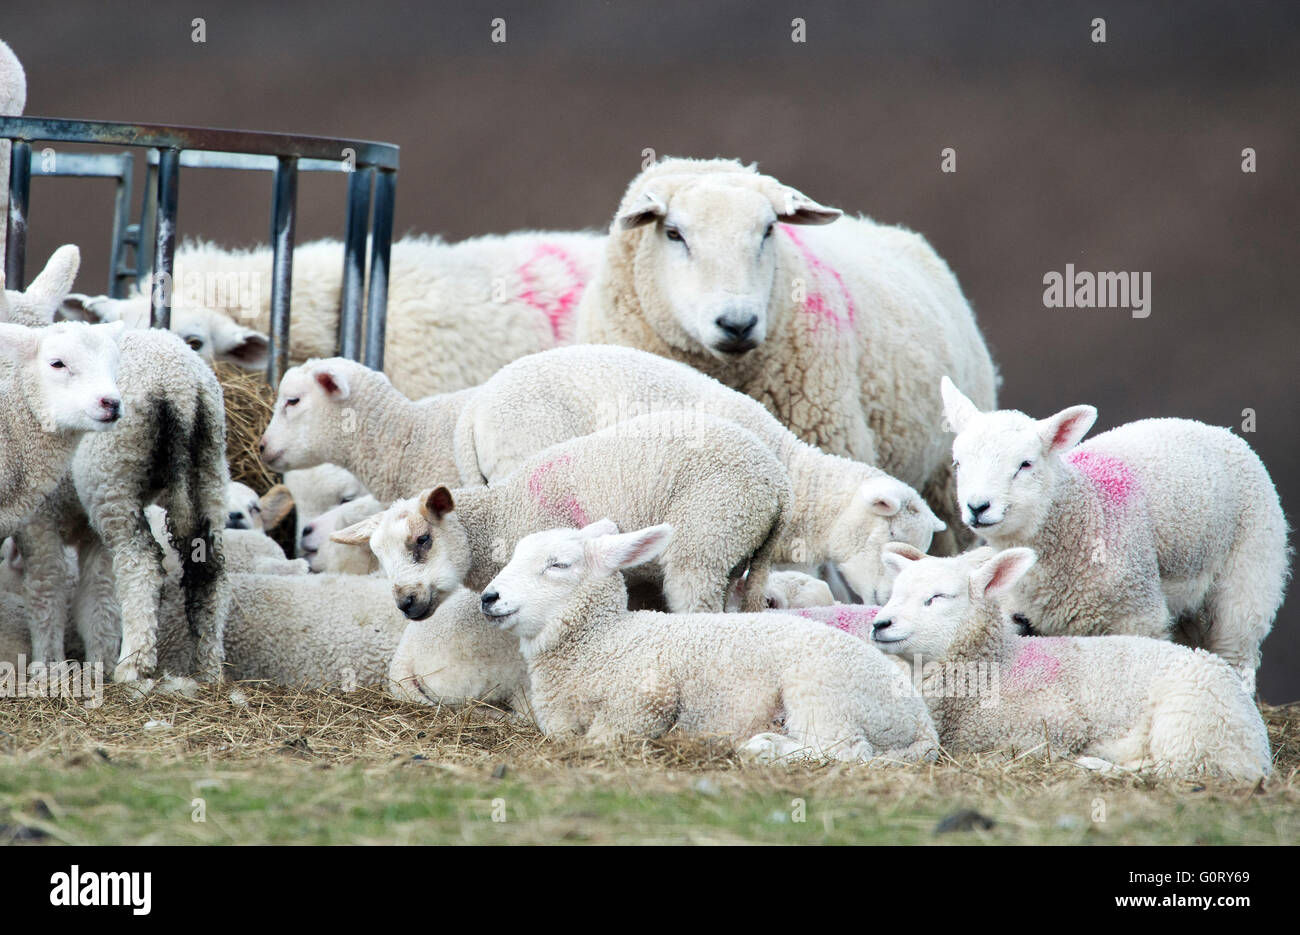 27.04.2016, drängen sich Schafe und Lämmer zusammen um auf der Framside Farm, Caithness, Schottland warm zu halten. Stockfoto